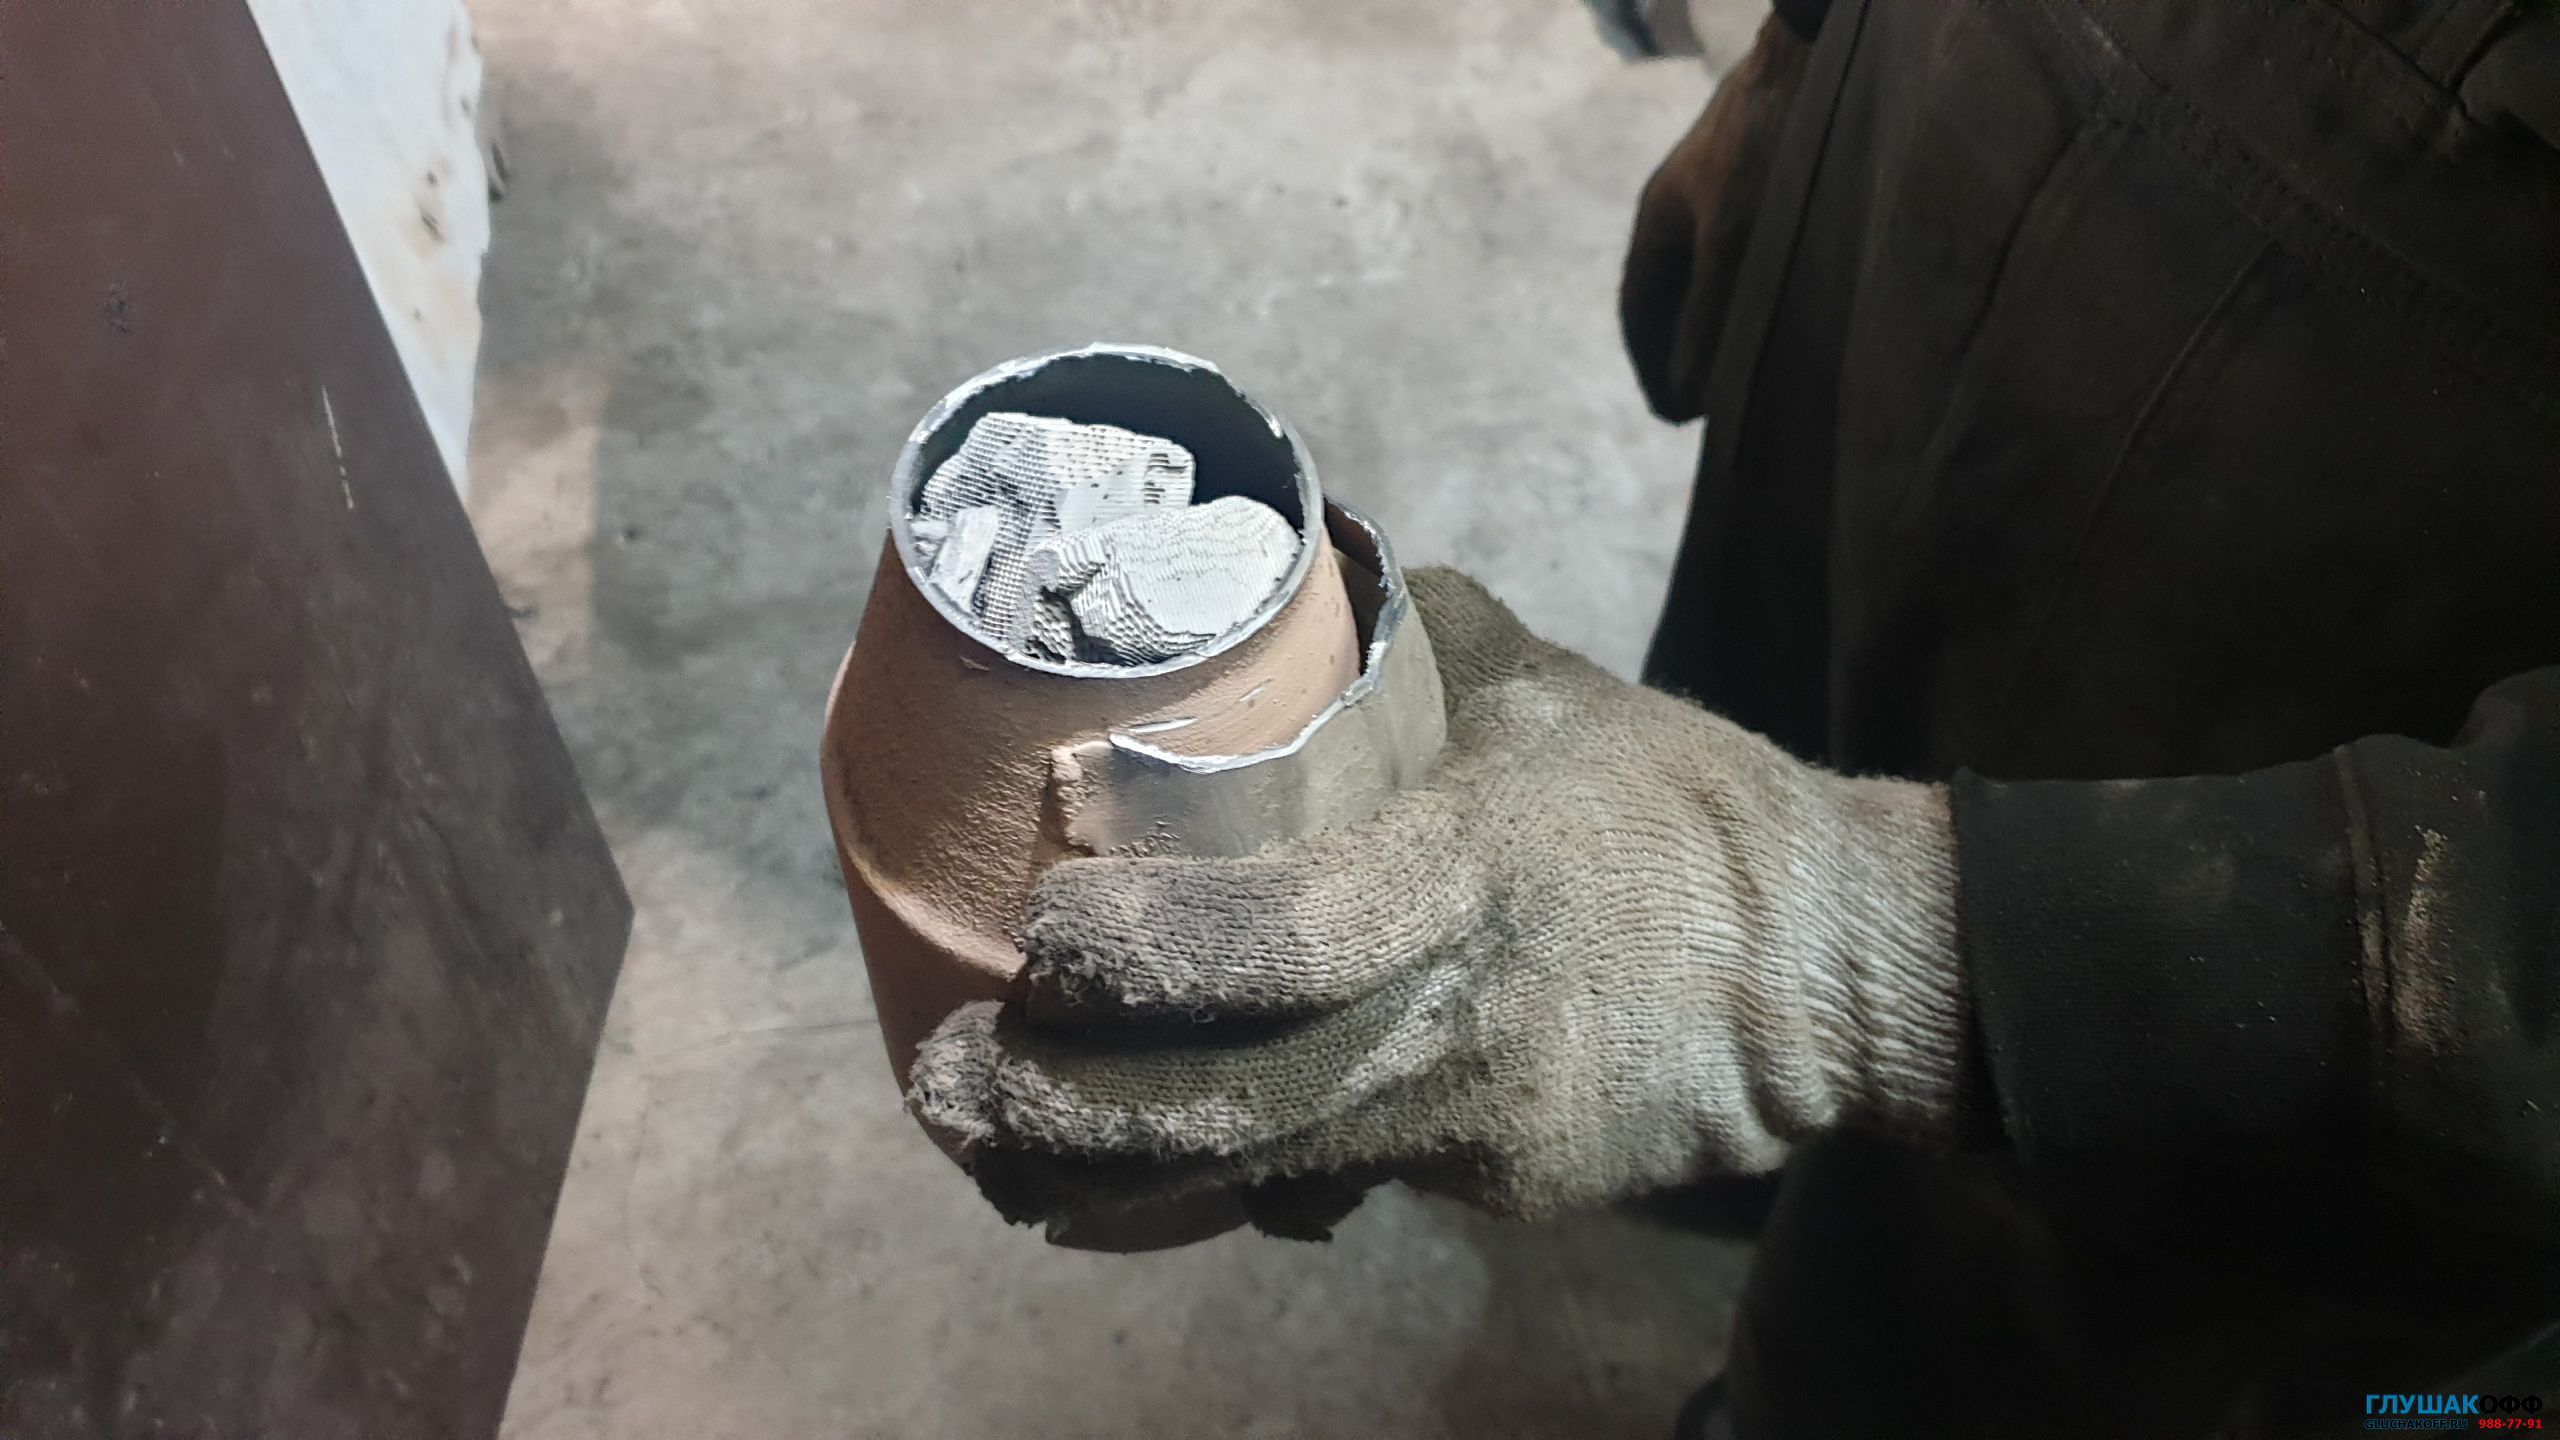 Hyundai Tucson 2.0 / 2018 замена катализатора на пламегаситель и удаление ошибки по катализатору